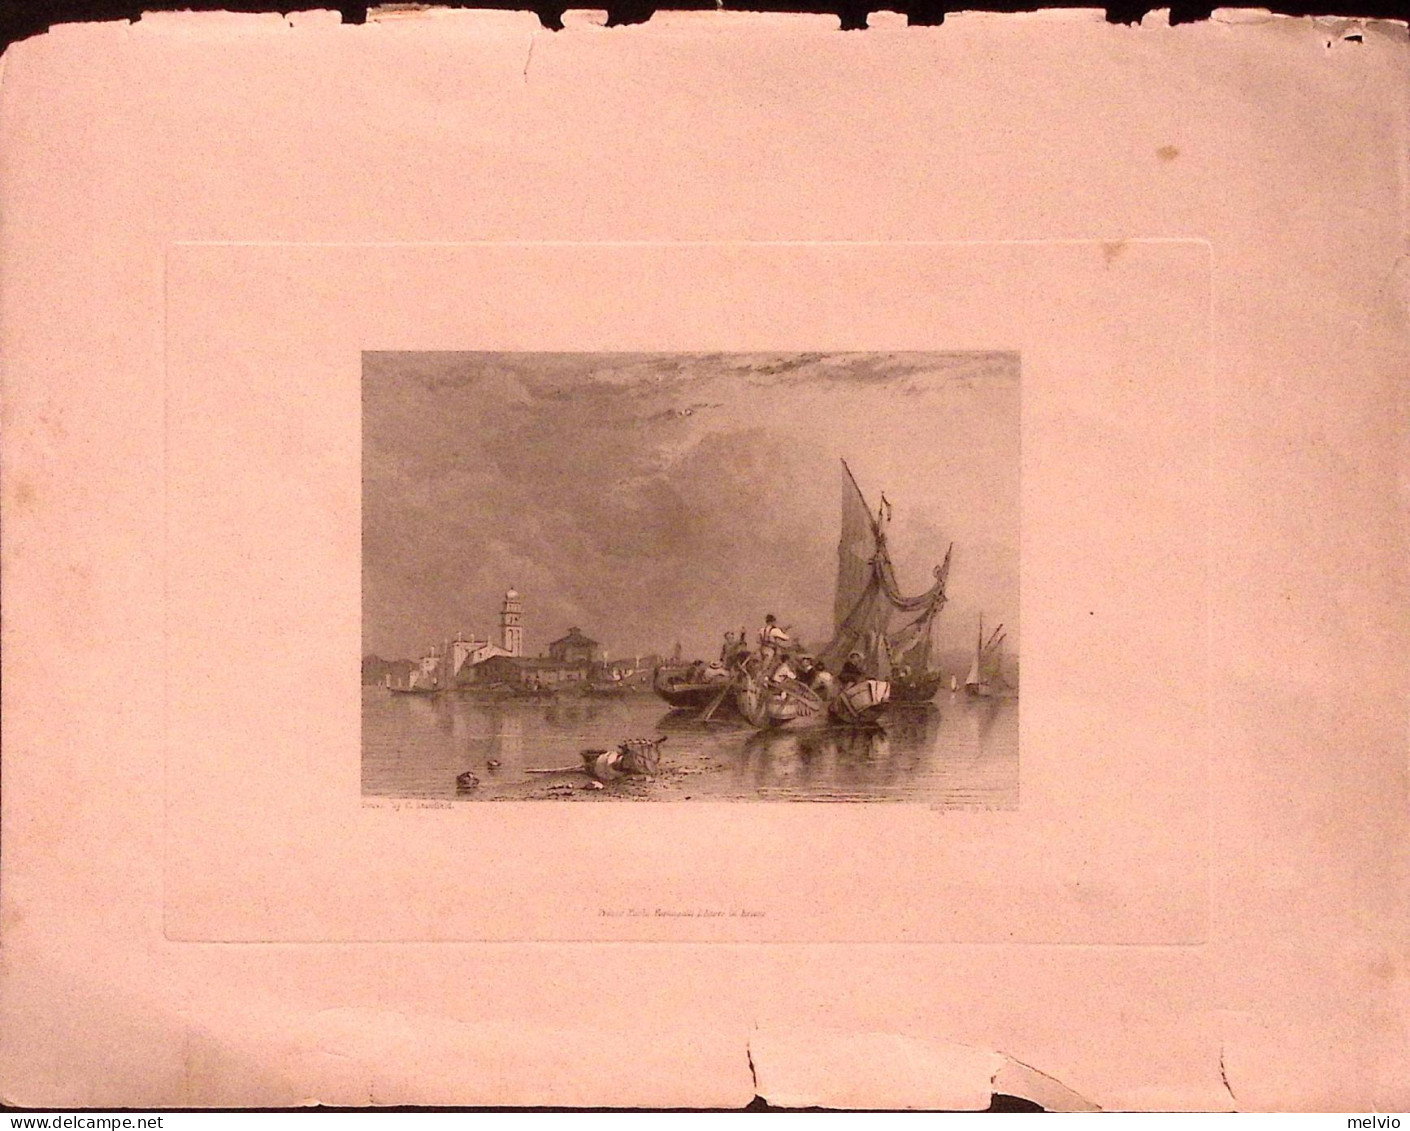 1832-Stanfiels Drawn Murano Imbarcazioni Acciaio Dim.23x15cm.presso Paolo Fumaga - Geographische Kaarten